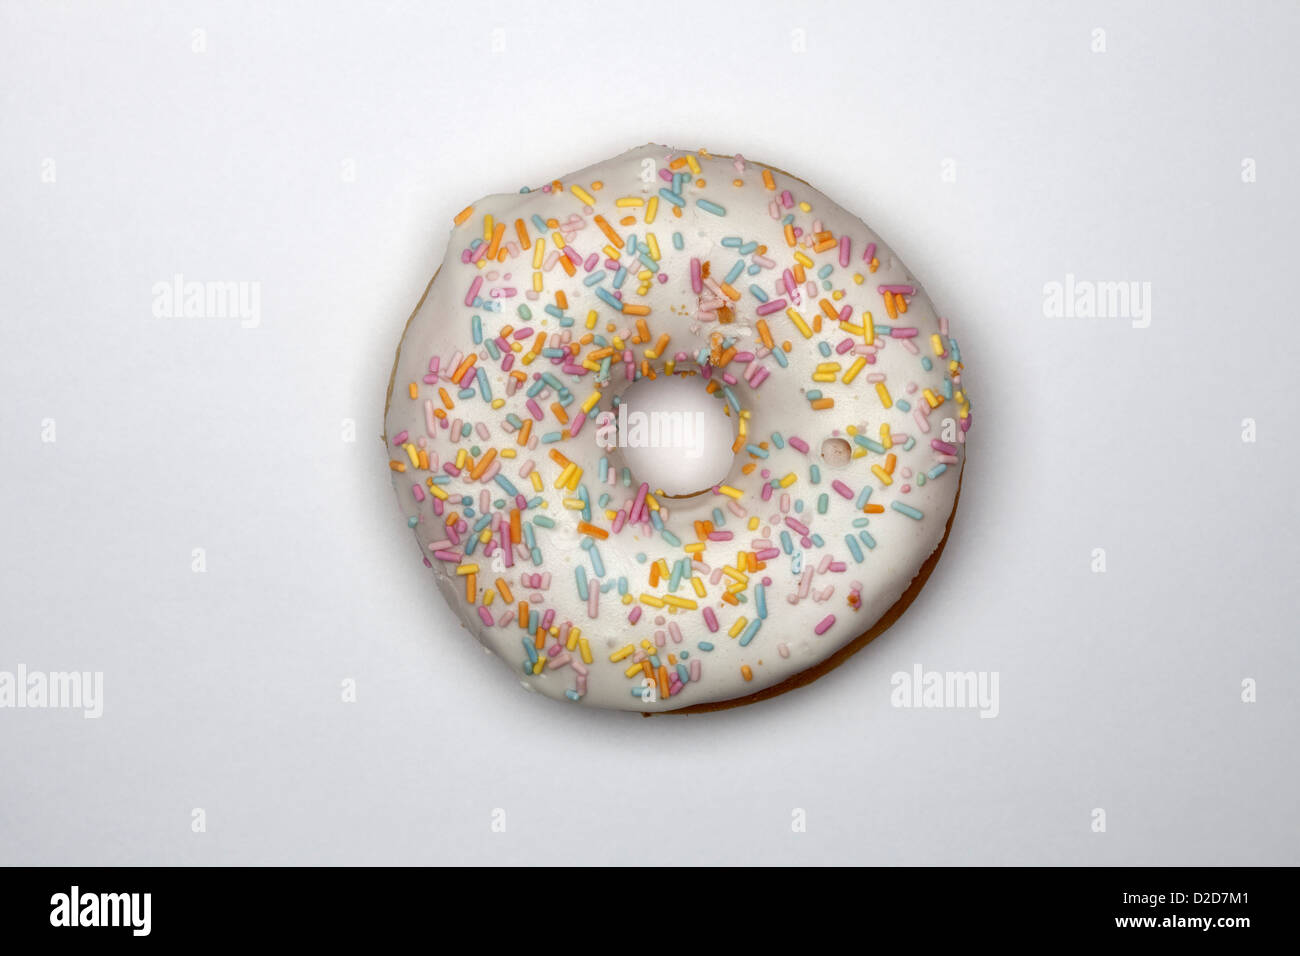 A doughnut Stock Photo